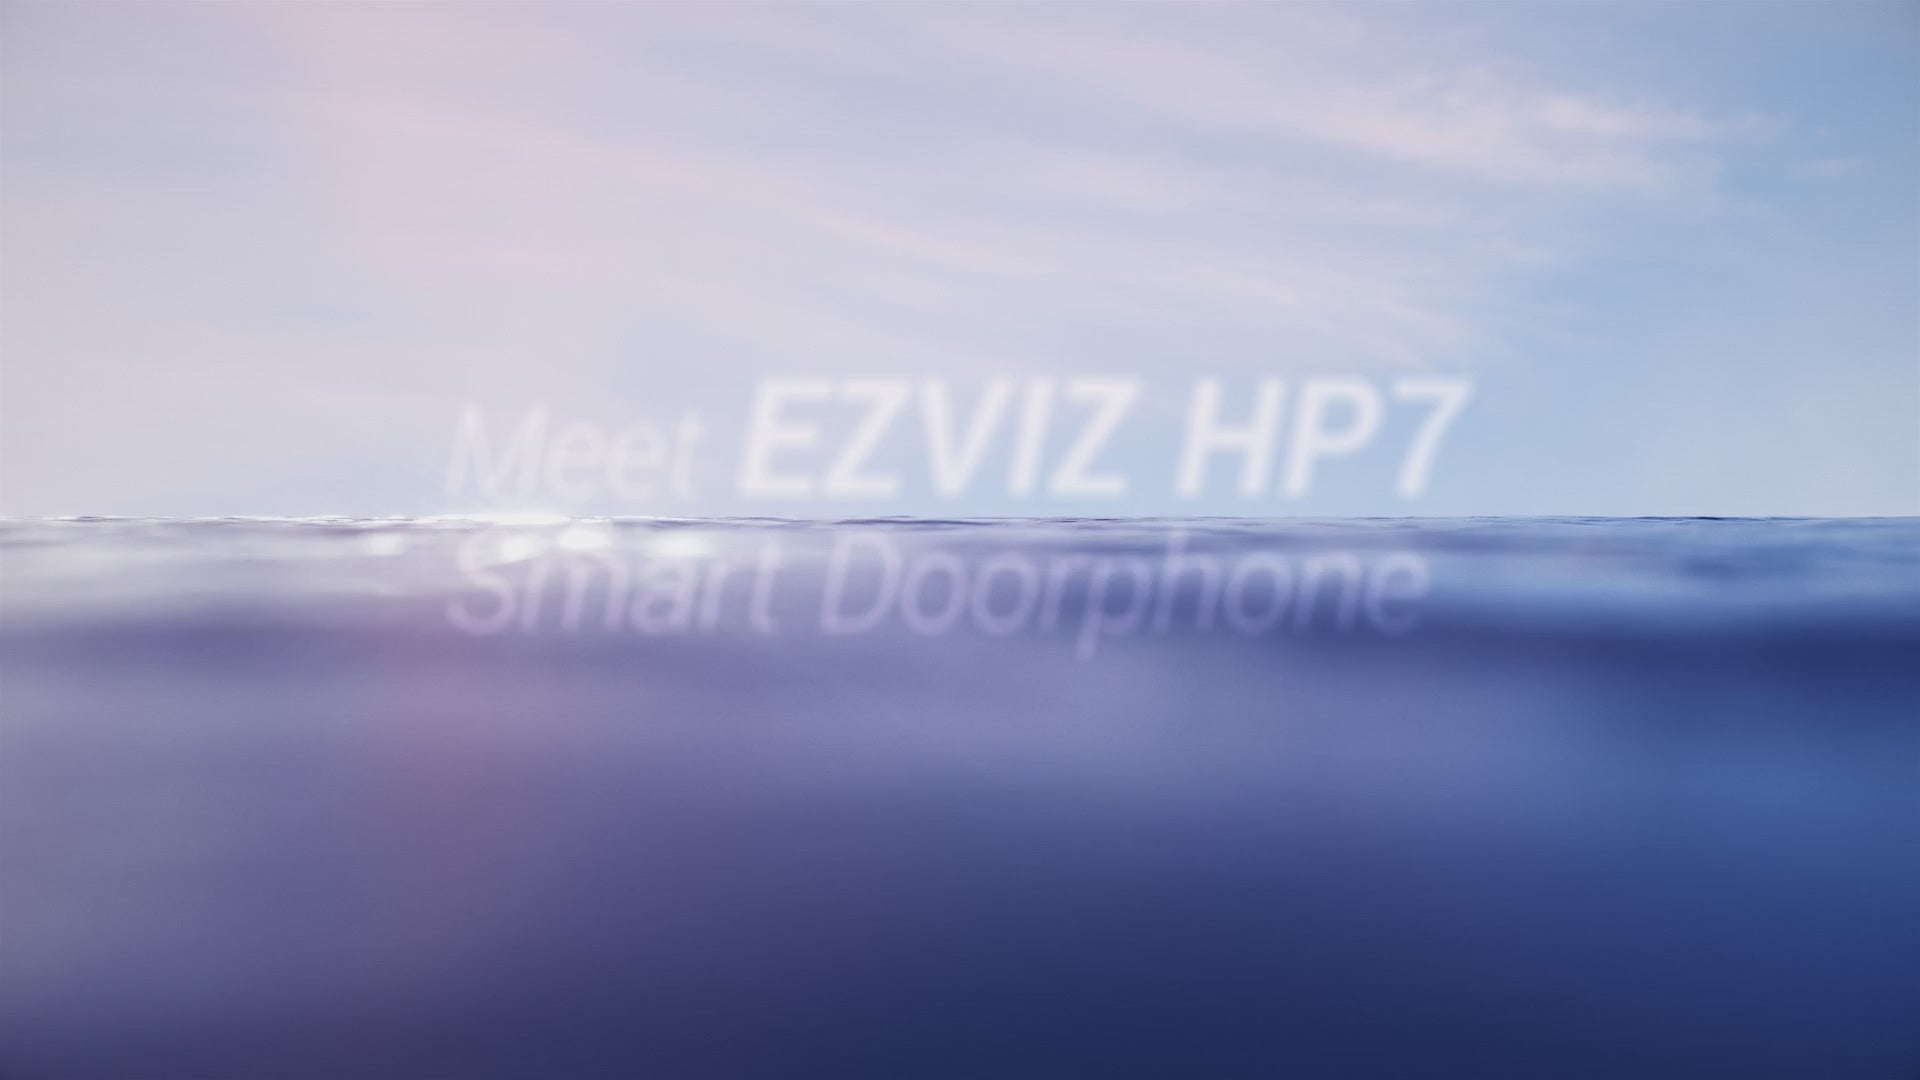 Ezviz HP7 2K smart home video door phone